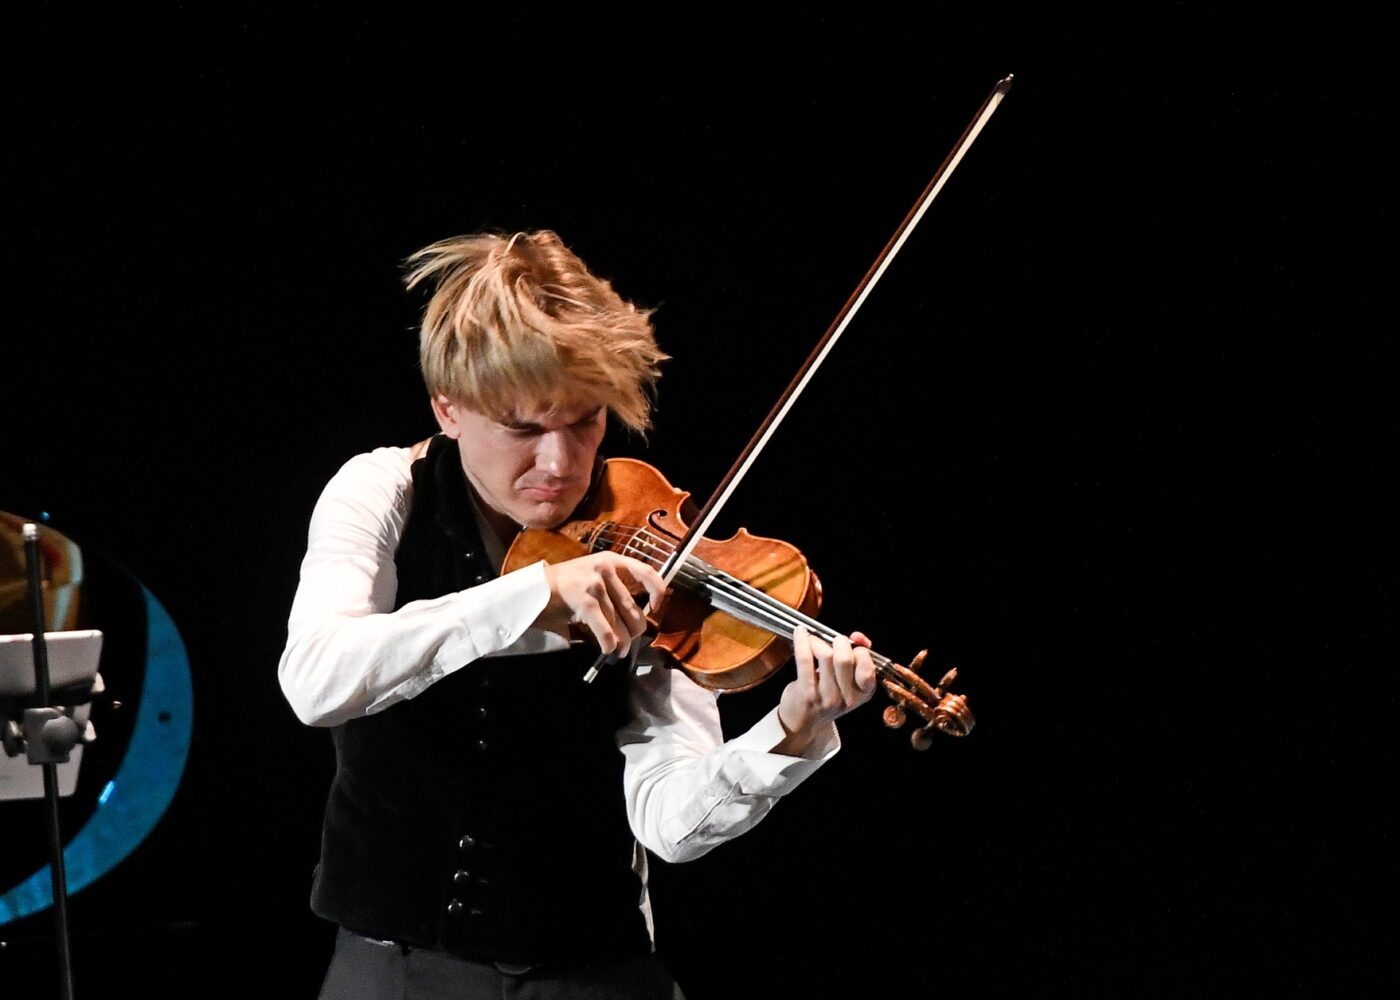 Destacado violinista austriaco Yury Revich y el pianista chileno Danor Quinteros presentarán concierto de pascua en Teatro Regional Cervantes